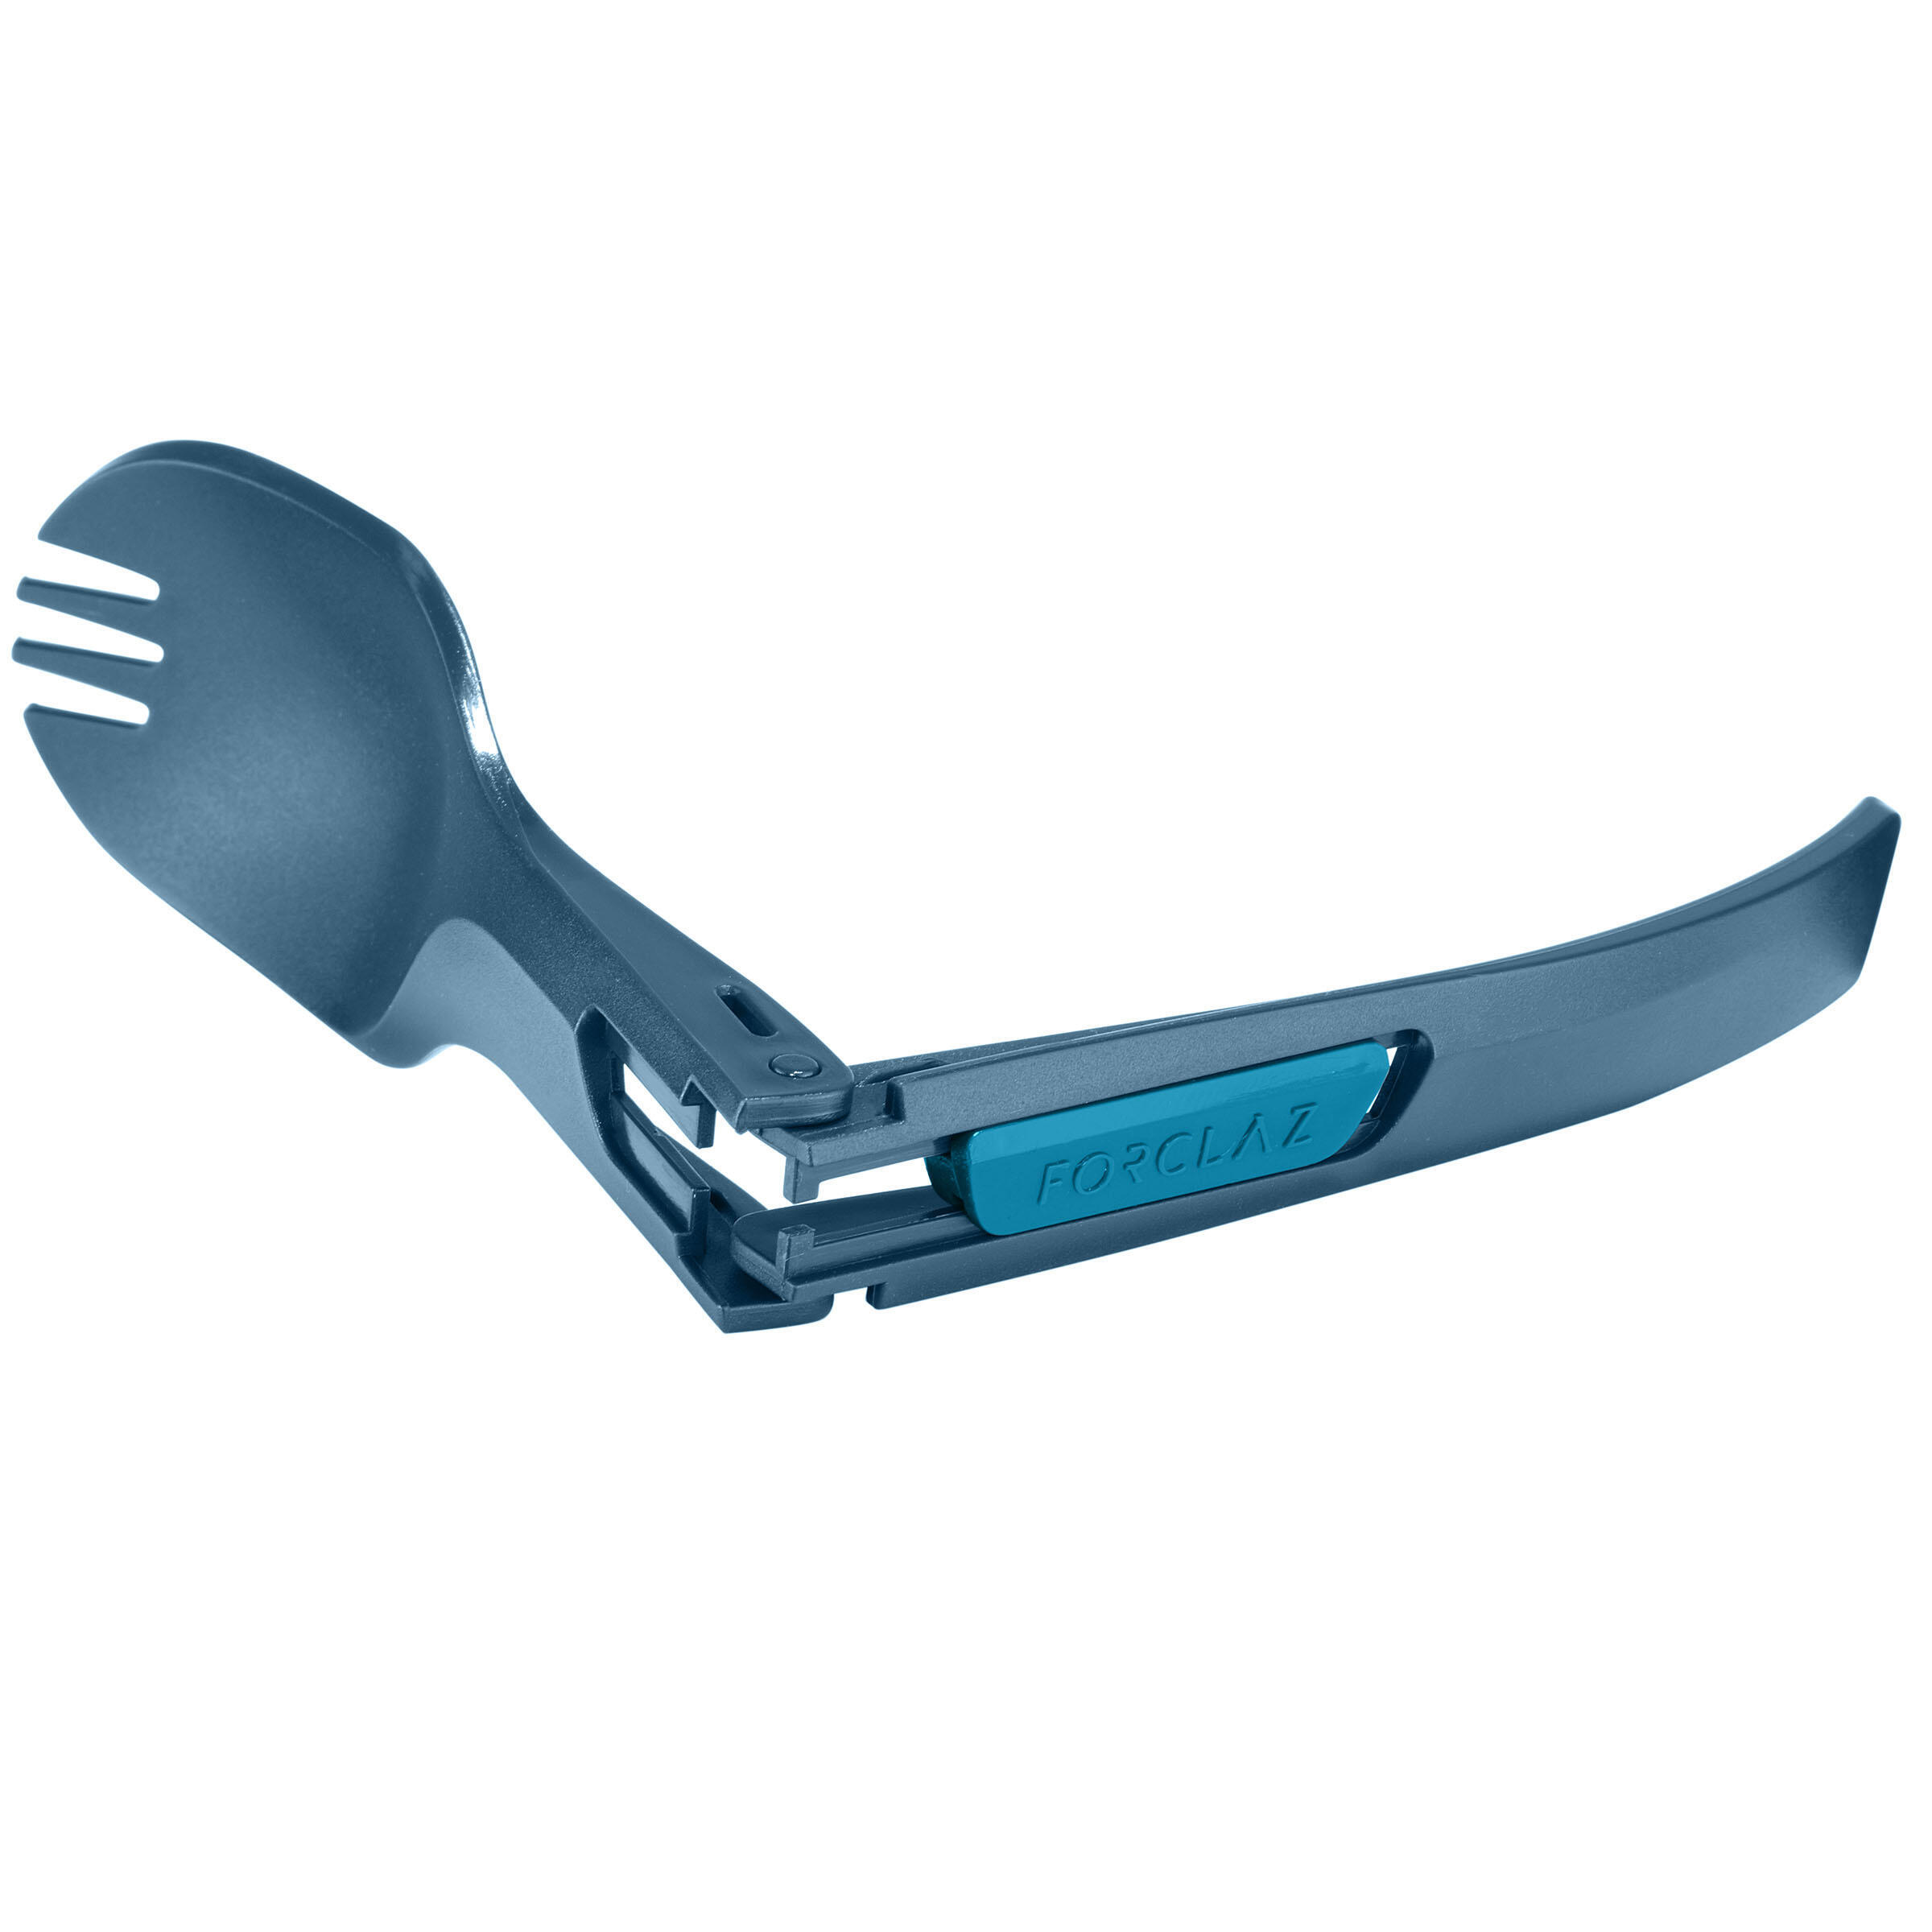 Folding plastic cutlery (fork/spoon) - MT500 4/4